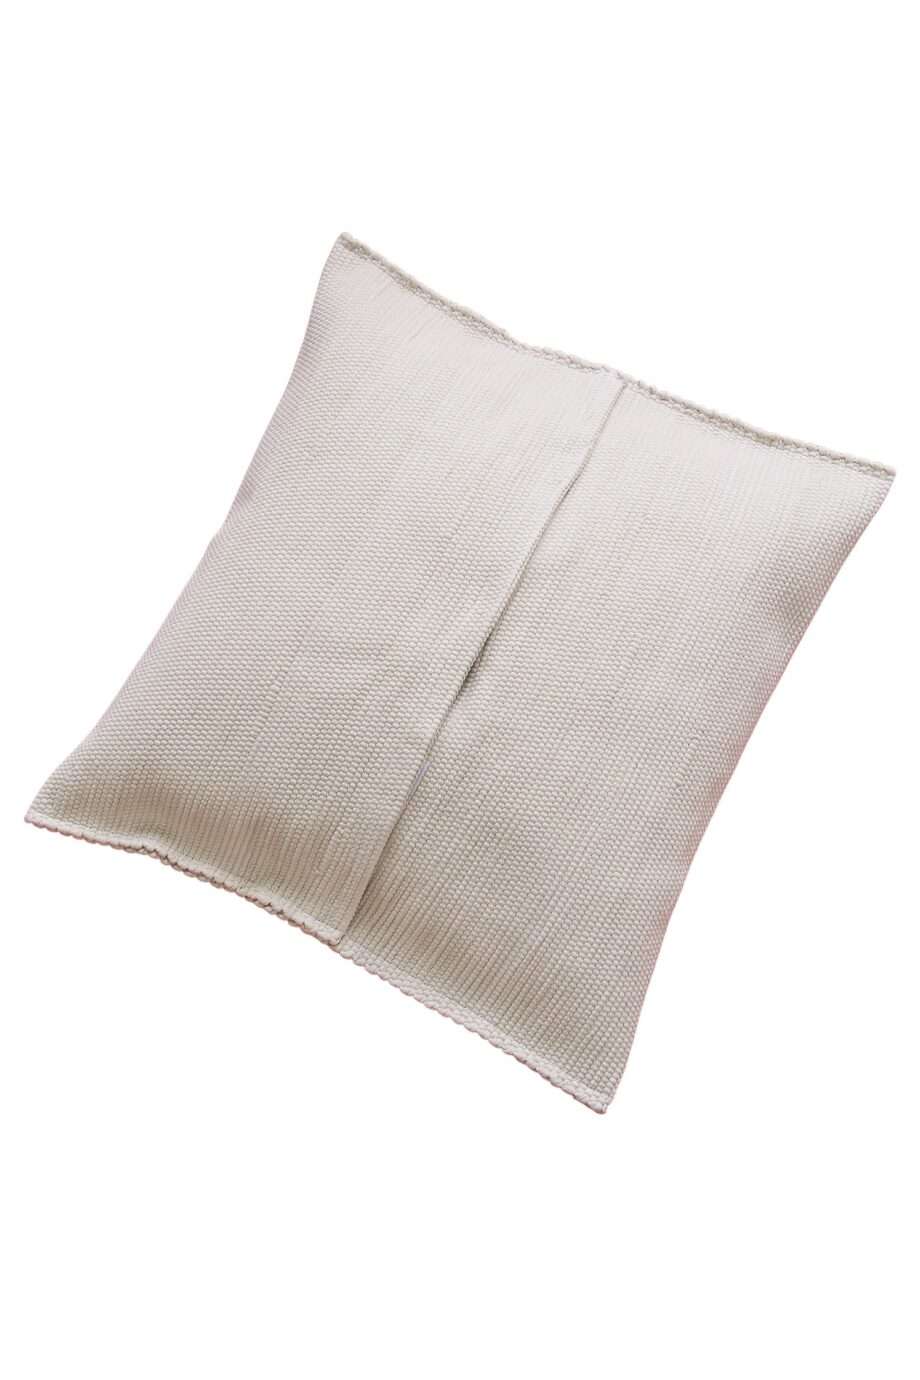 quadro linen woven cotton pillowcase medium_back